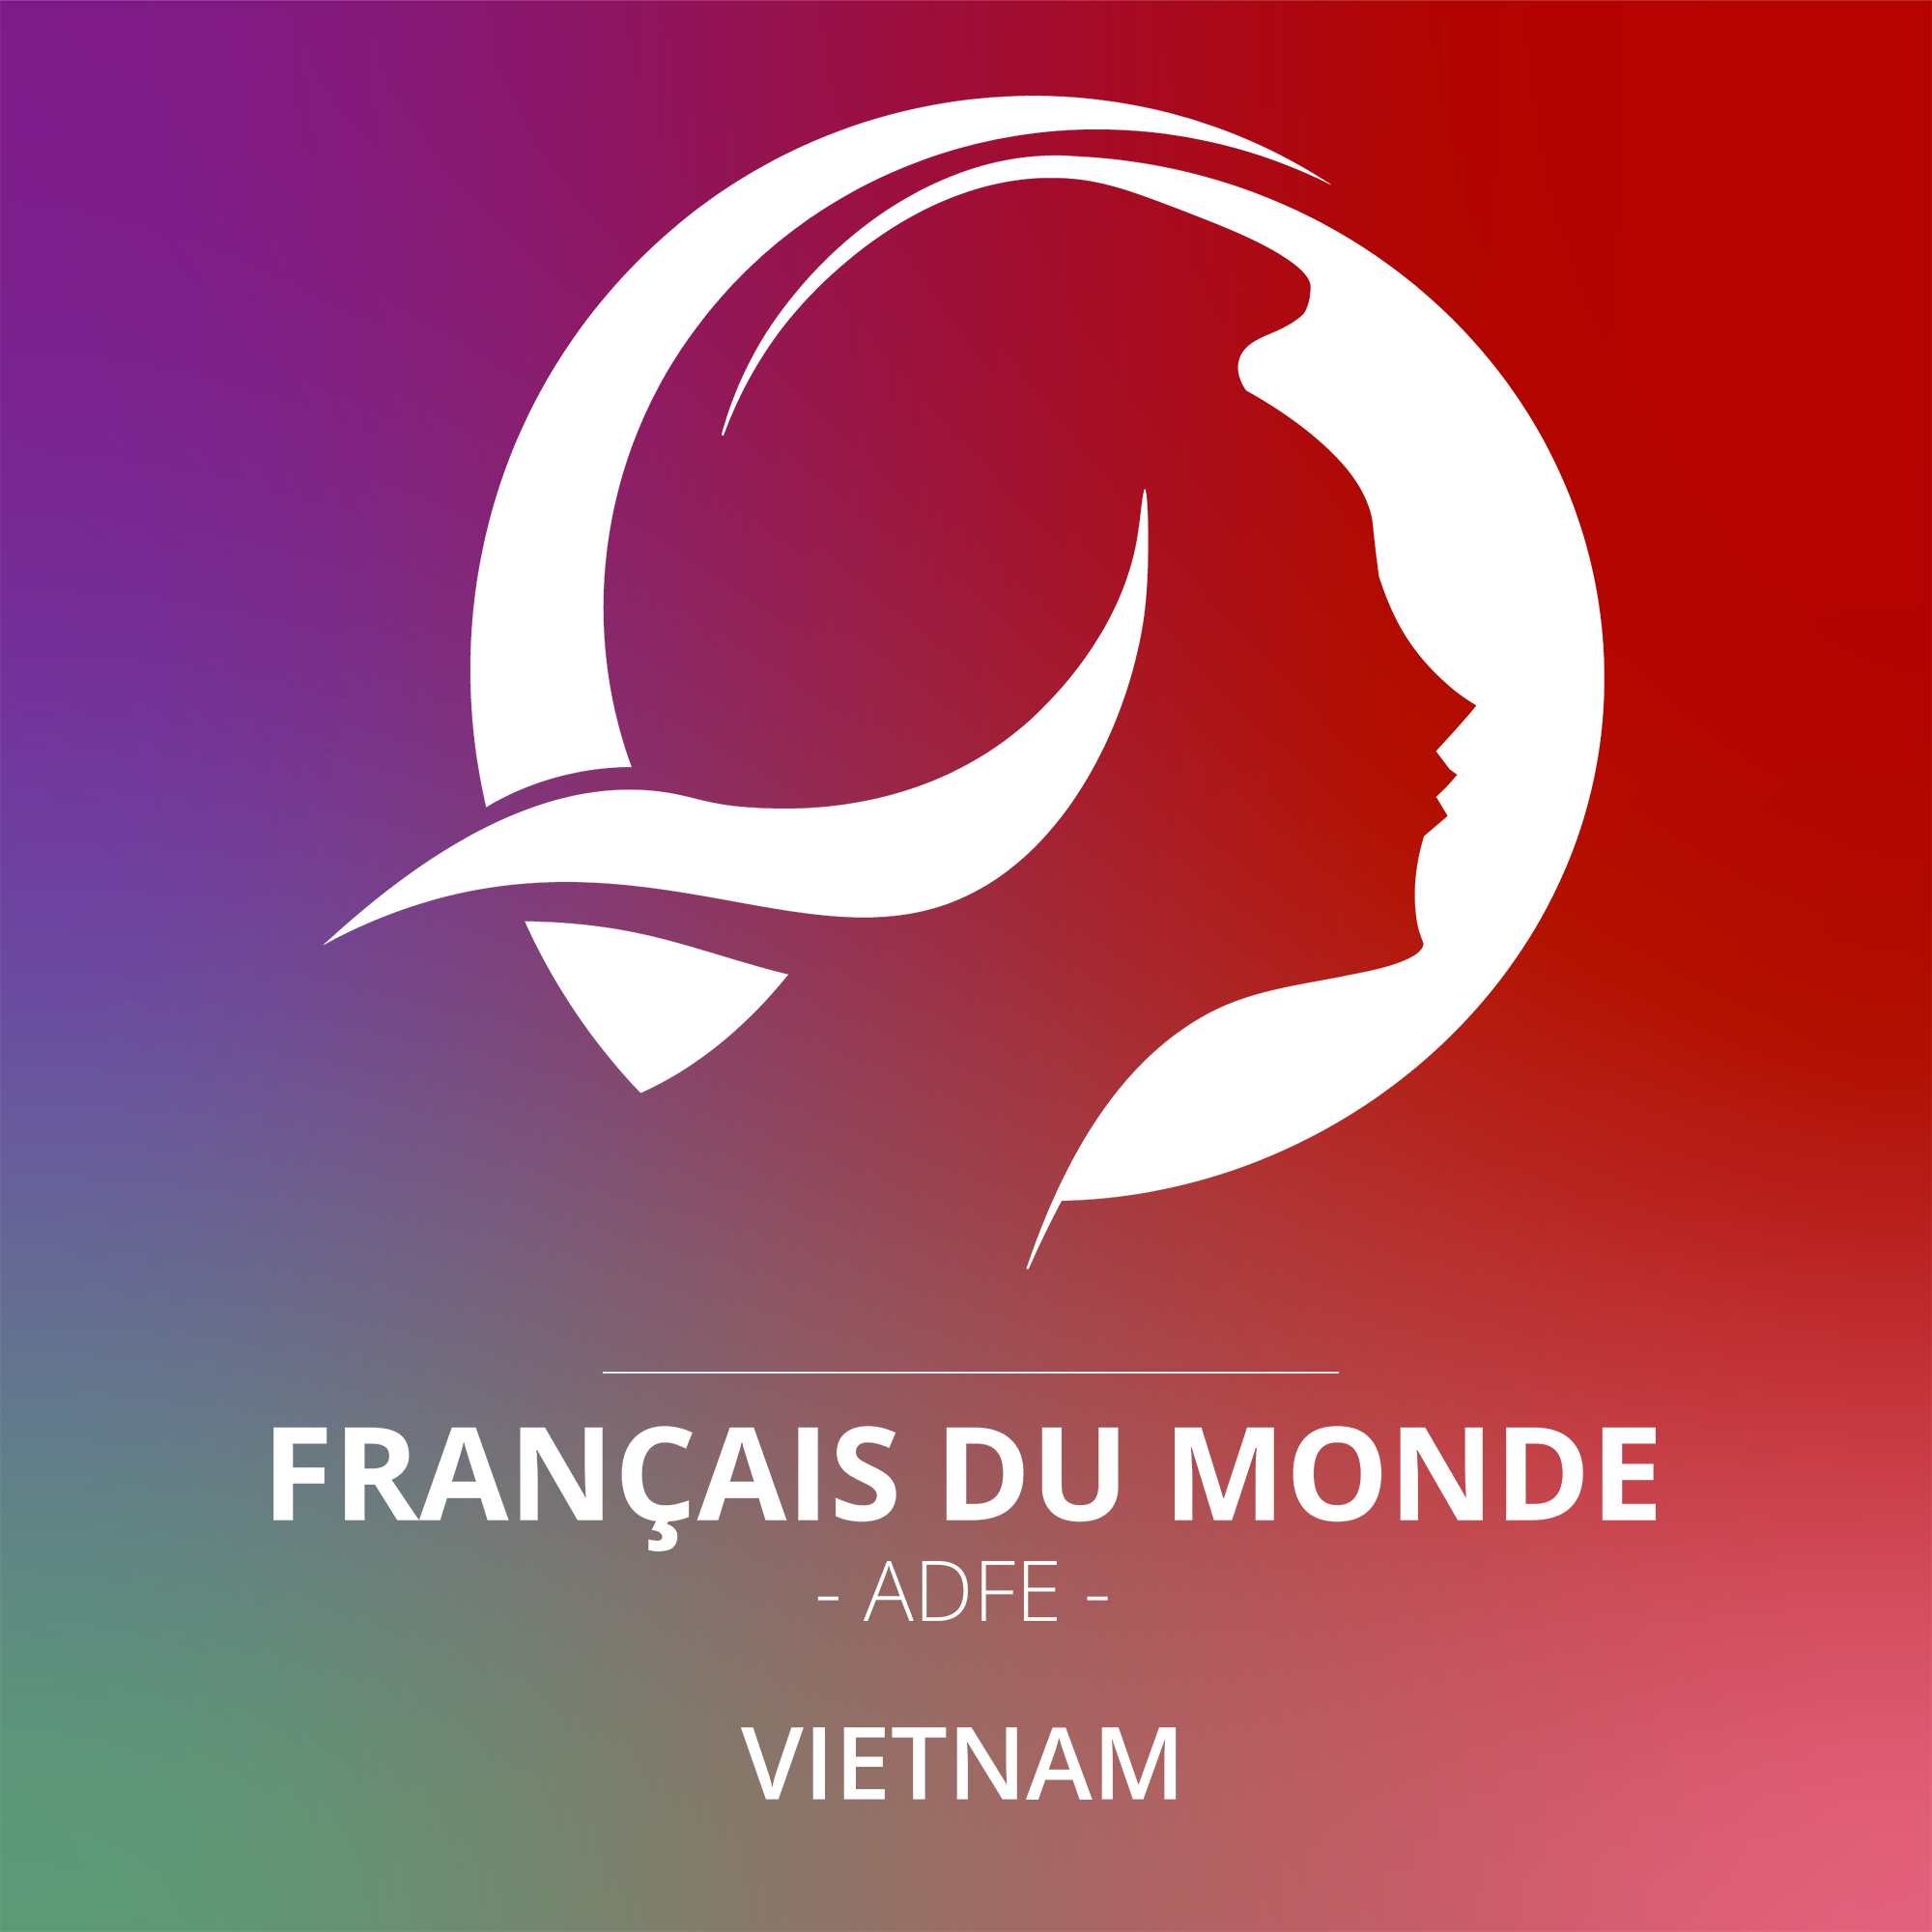 Français du monde - ADFE VIETNAM